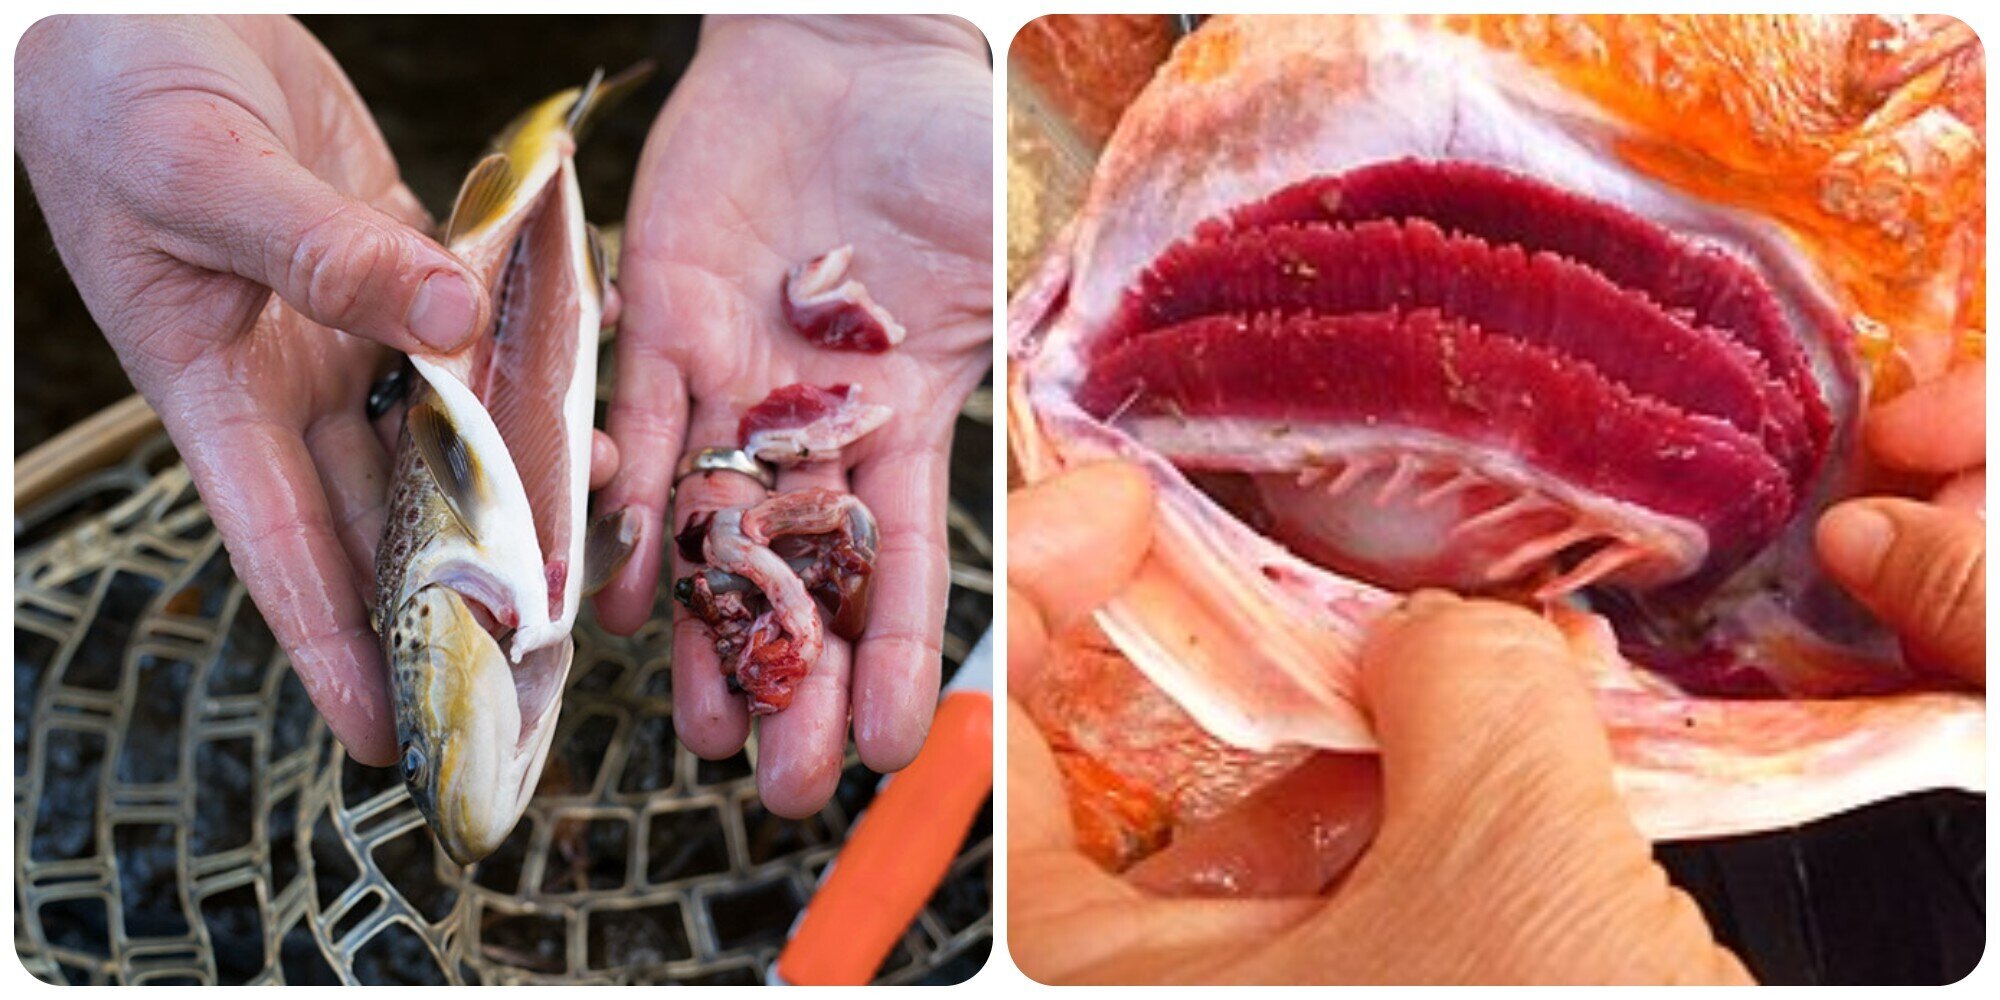 Mang cá và ruột cá là hai bộ phận của cá không nên ăn.